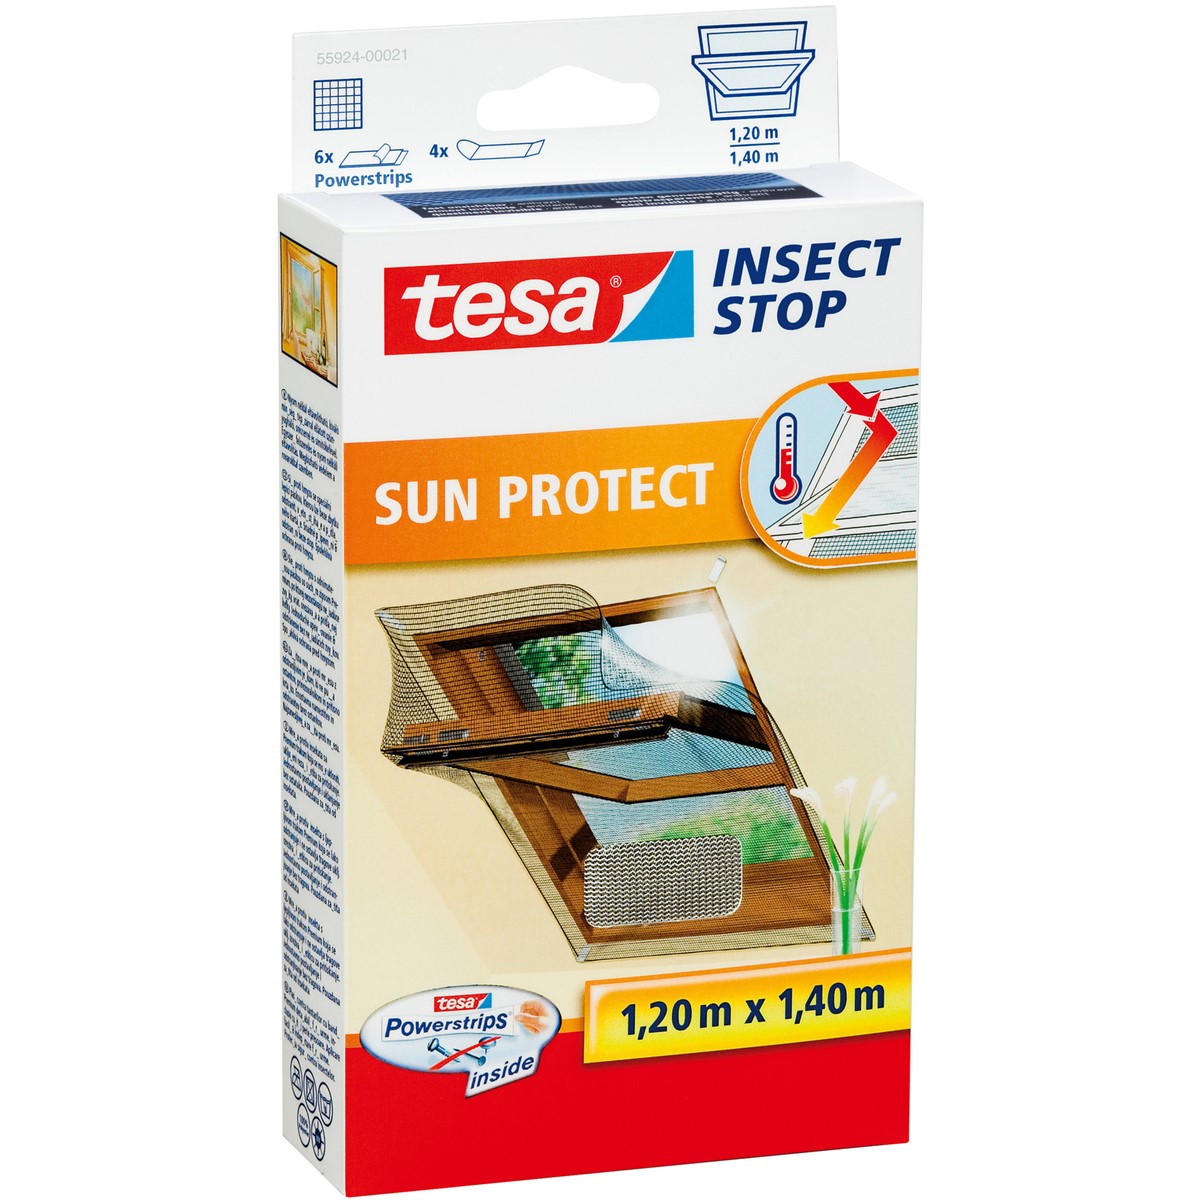 tesa 55924-00021 - Fliegengitter Insect Dachfenster, SUN Stop x 1,4m, anthrazit-metallic Klett 1,2m PROTECT für